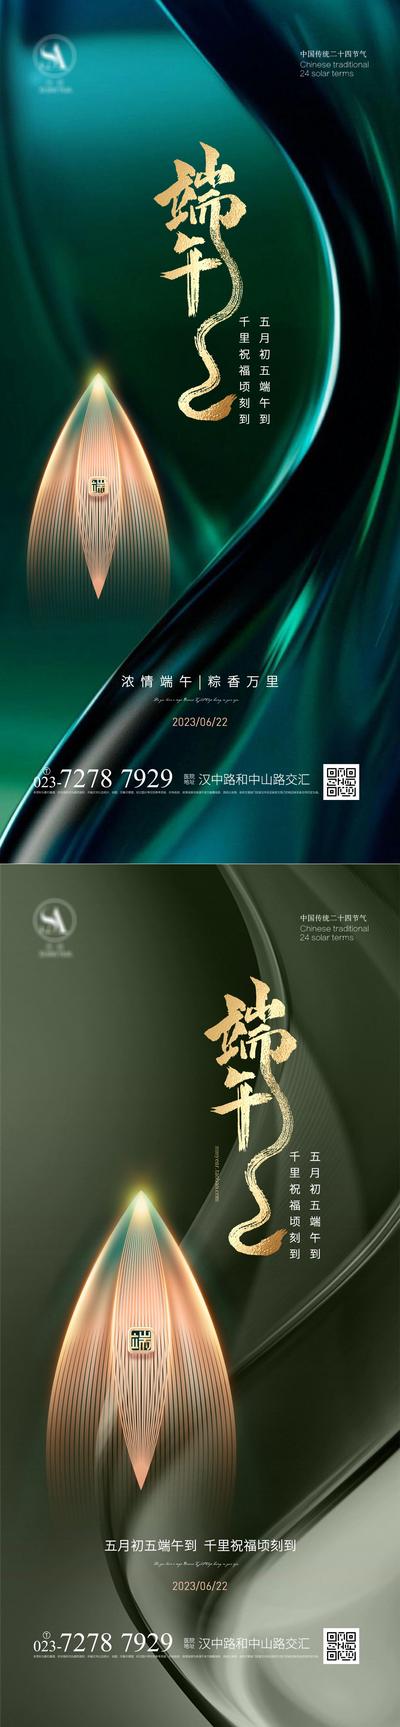 南门网 广告 海报 节日 端午 龙舟 品质 系列